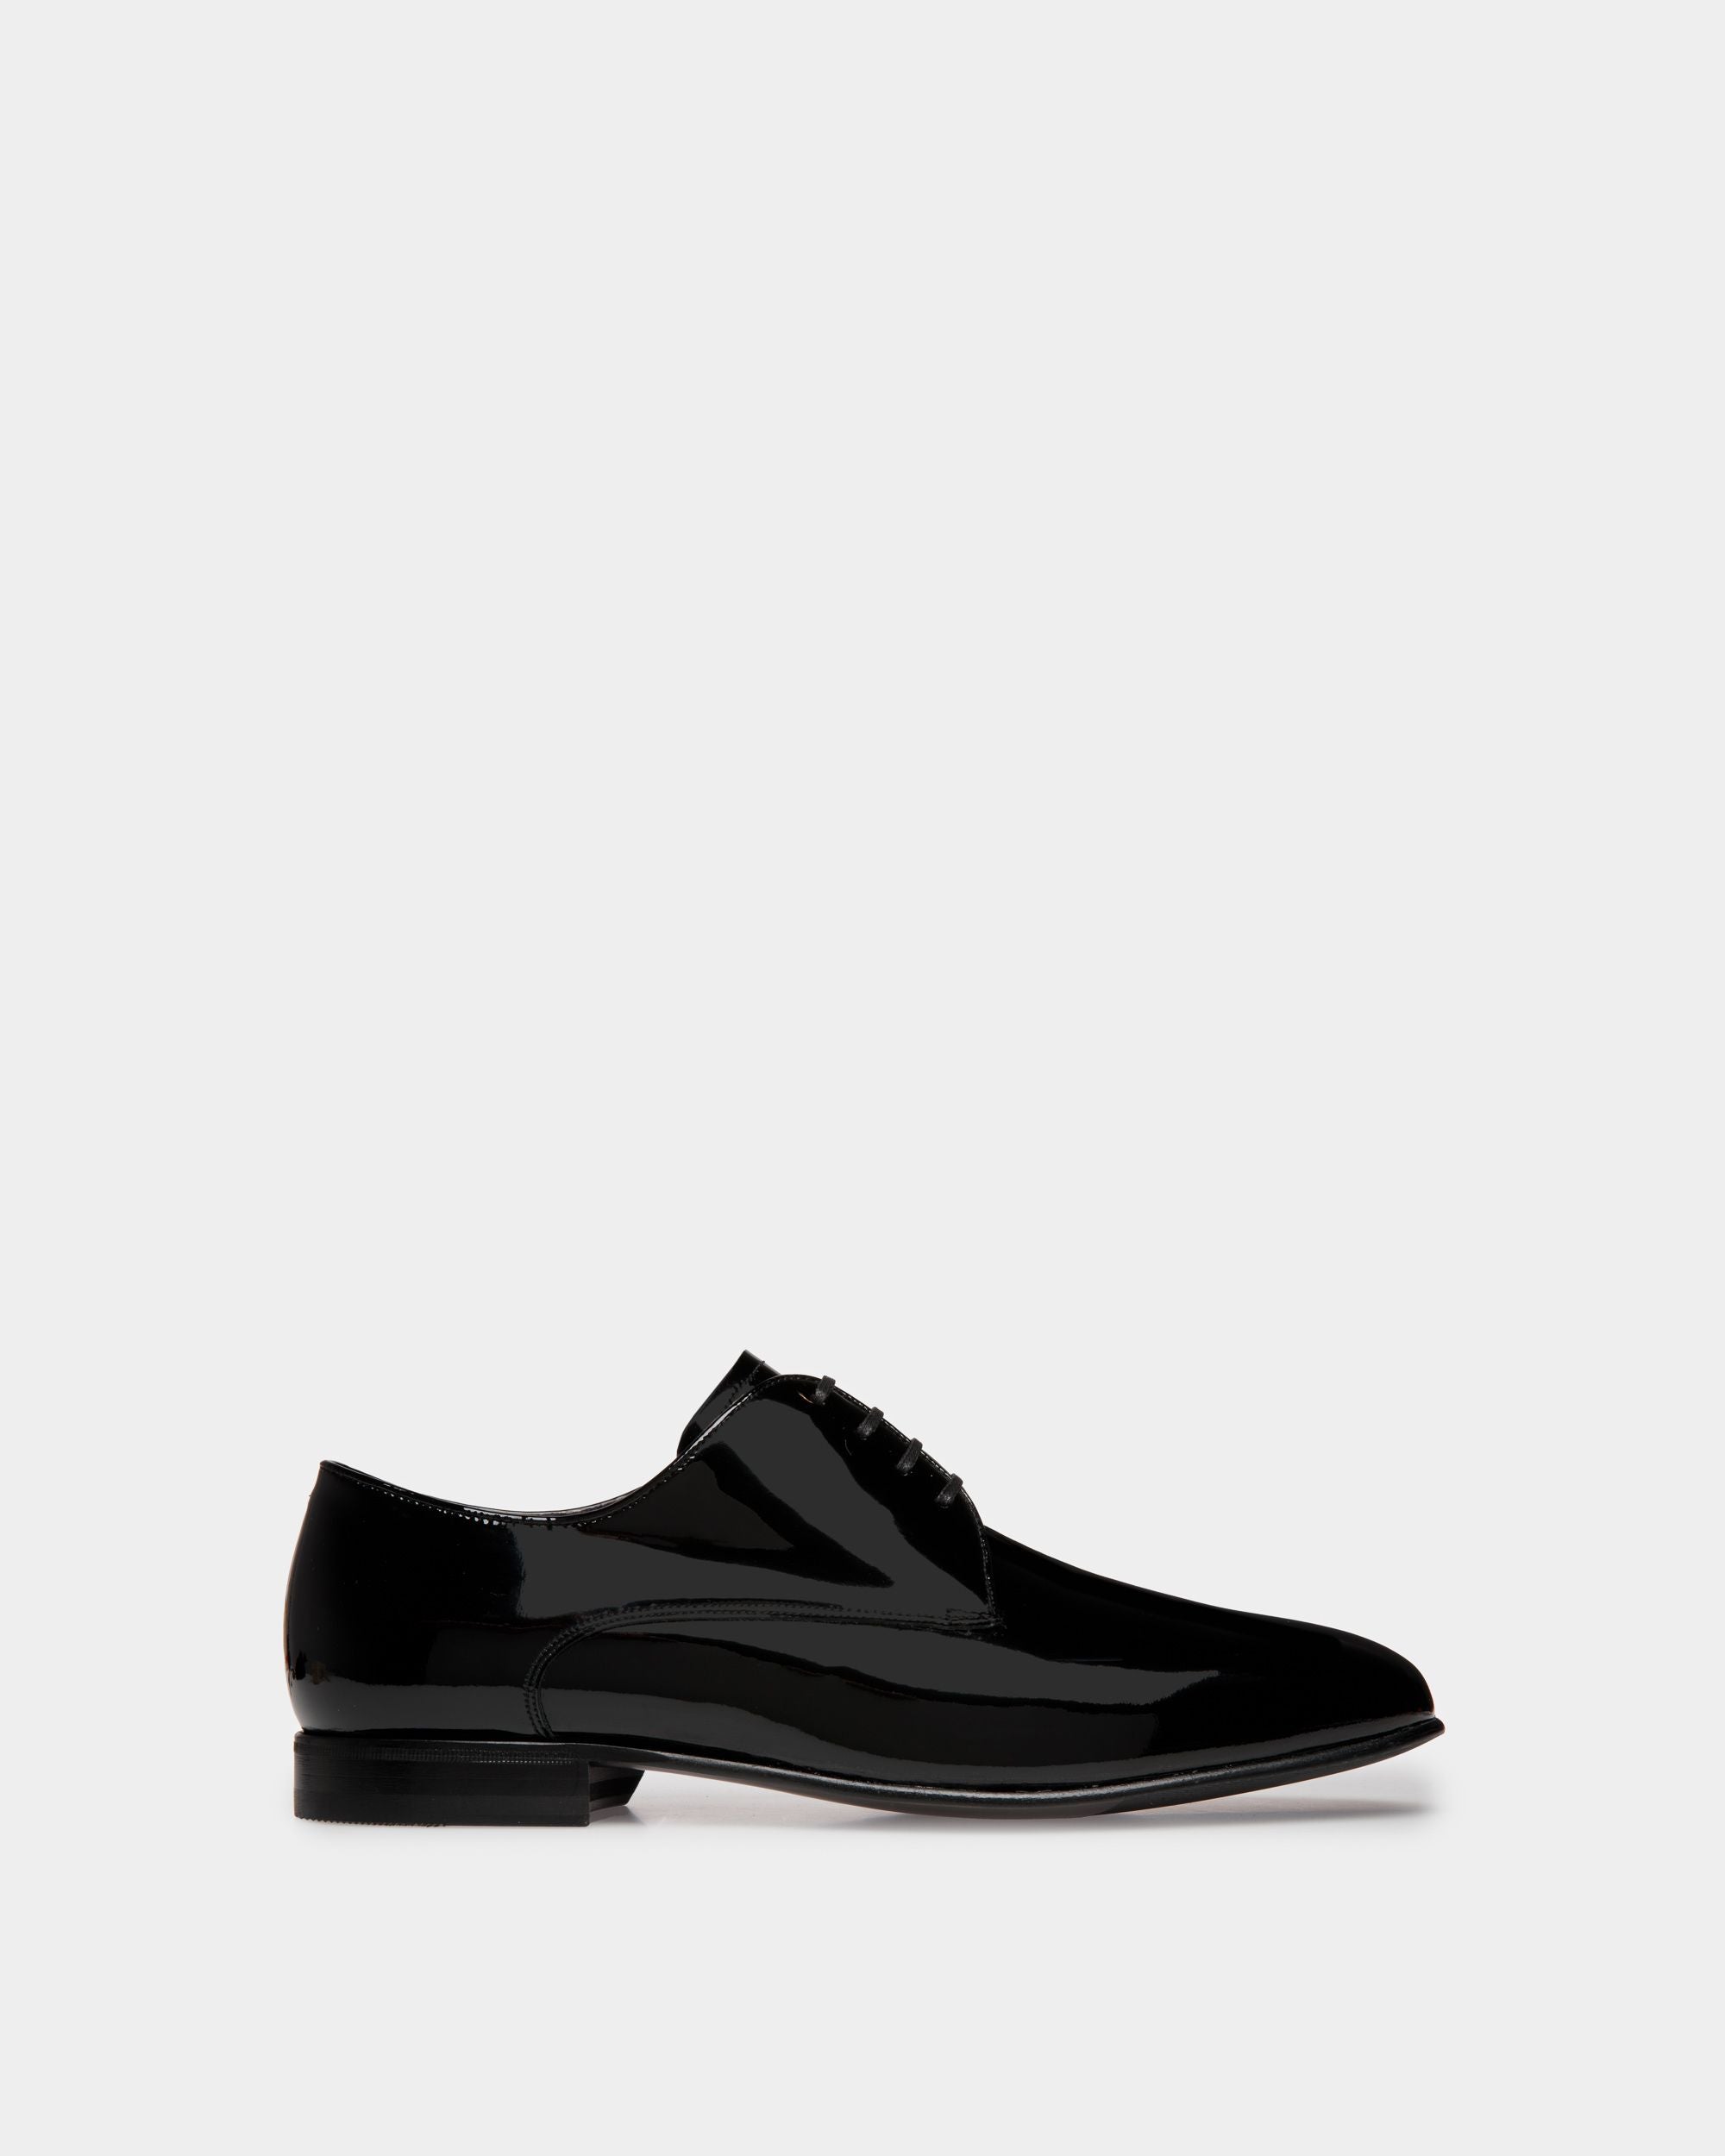 Suisse | Derby-Schuh für Herren aus schwarzem Lackleder | Bally | Still Life Seite